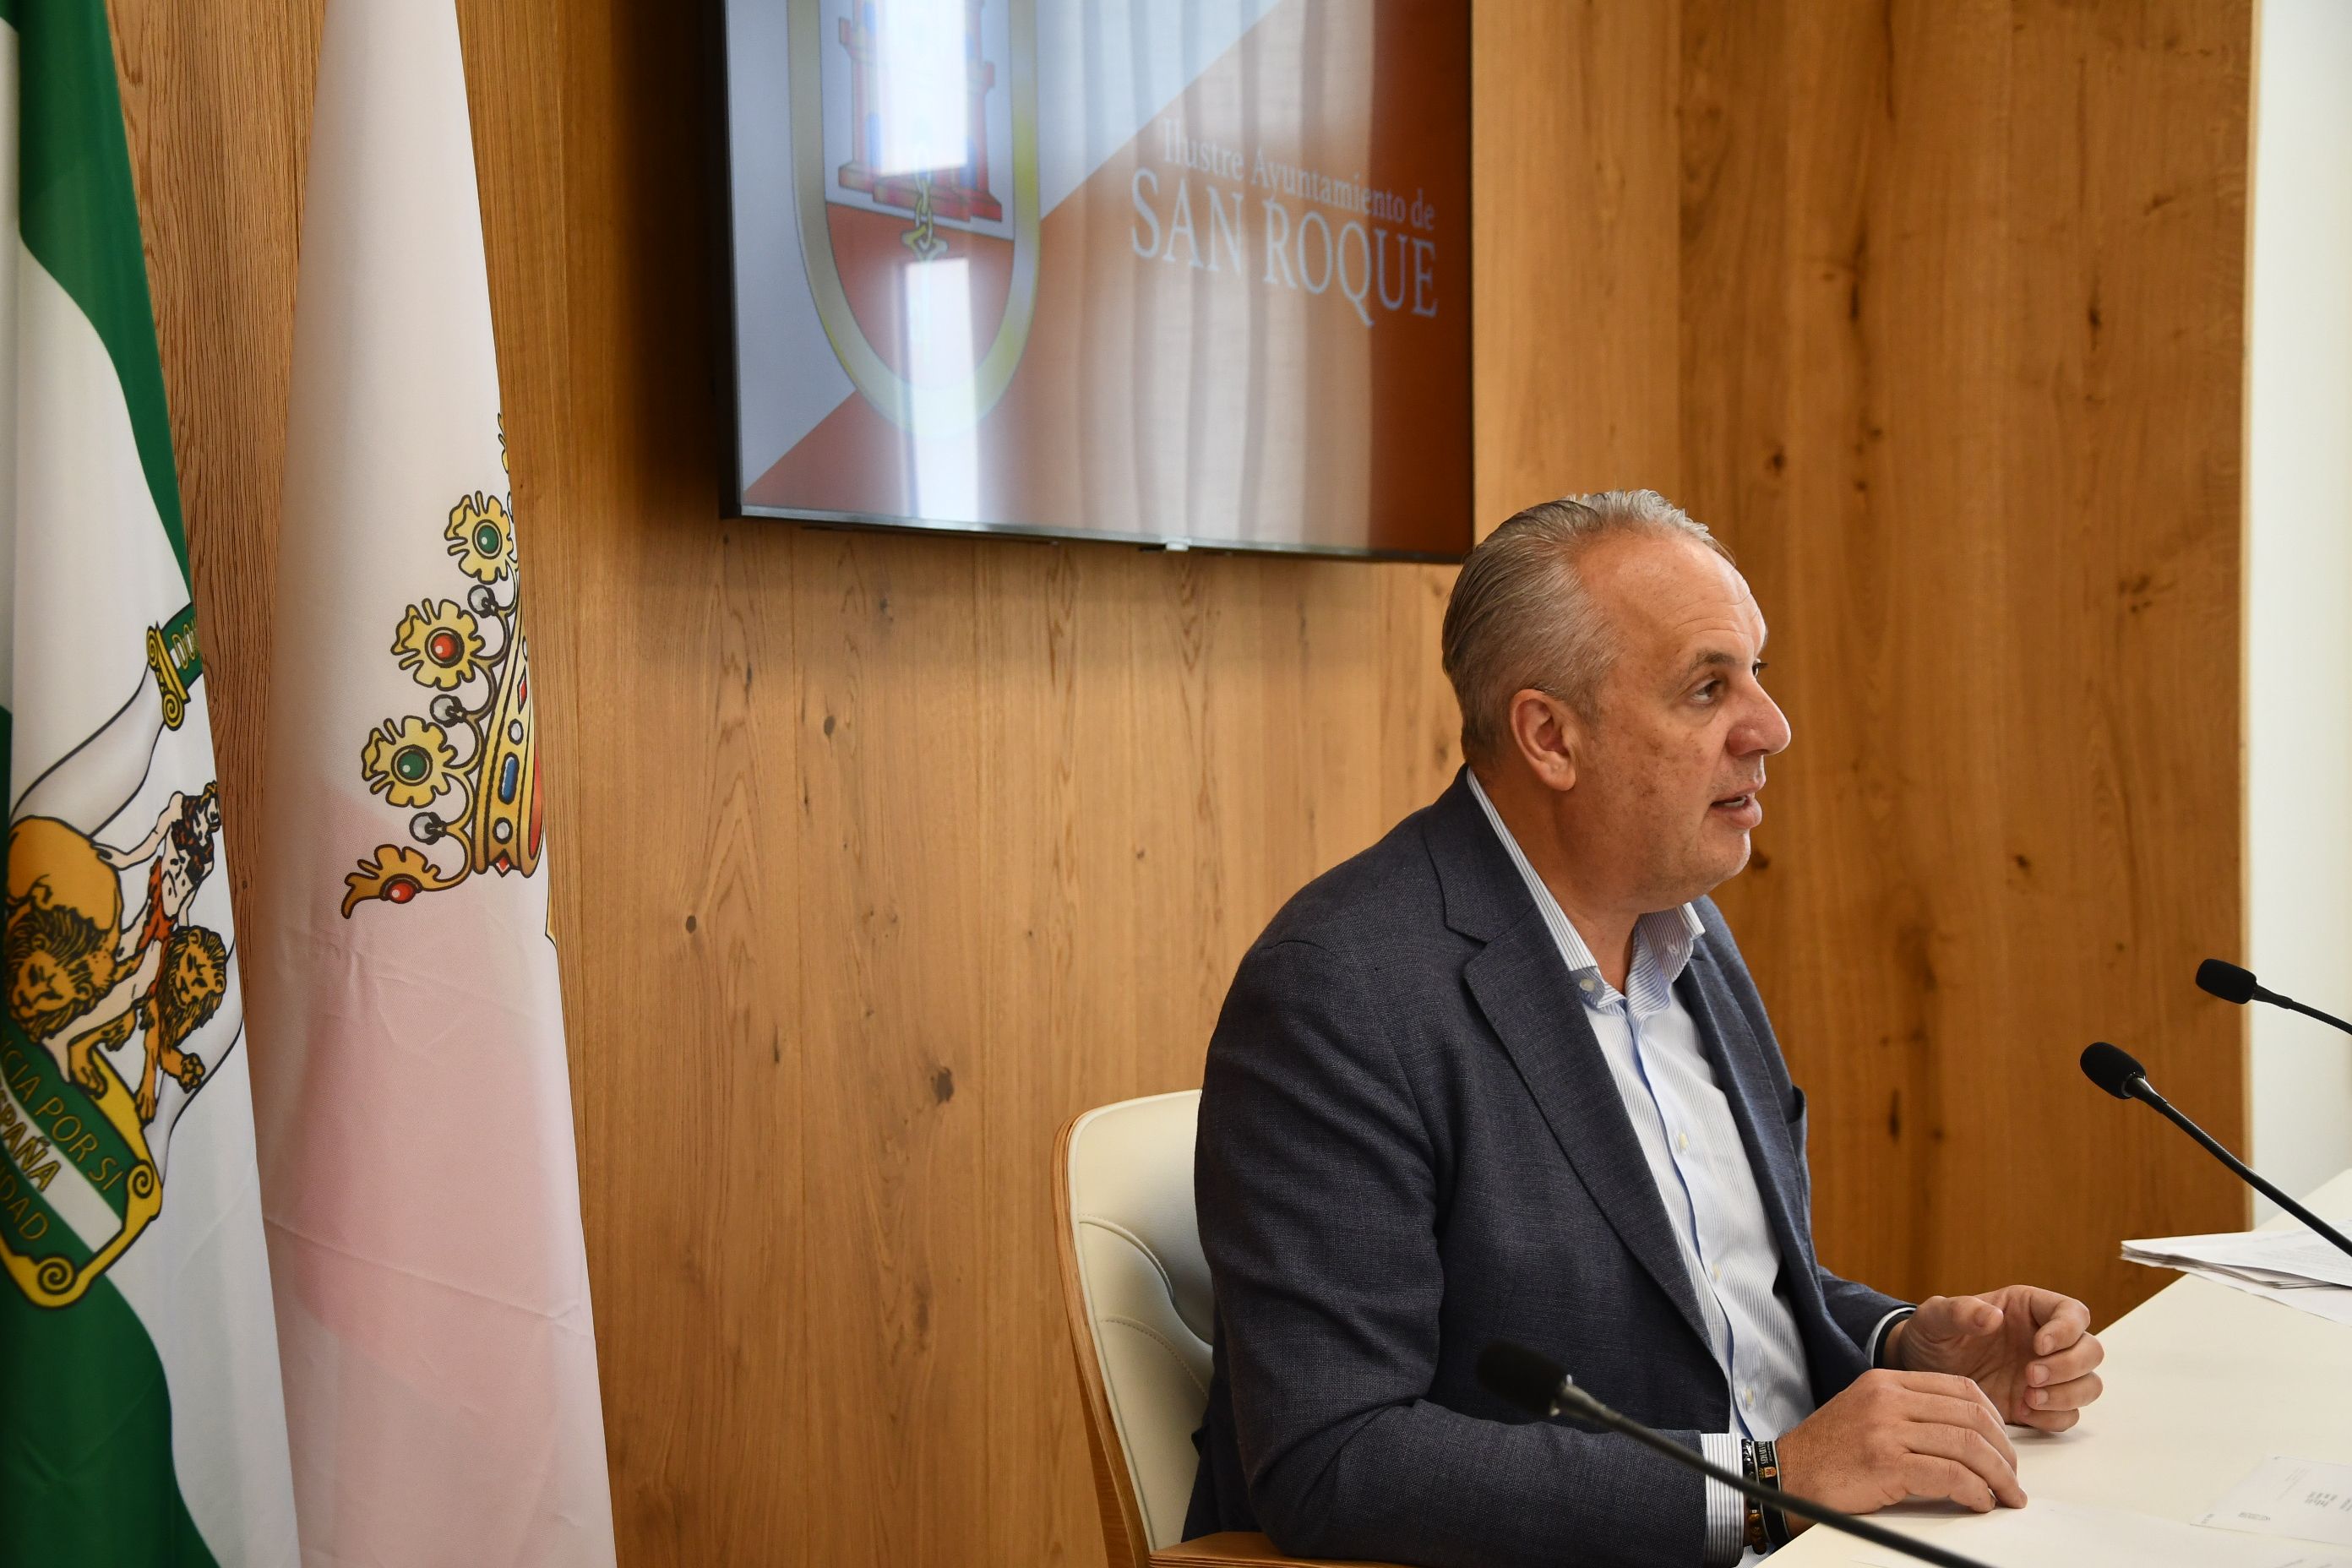 El alcalde de San Roque, Juan Carlos Ruiz Boix. Ruiz Boix insiste en que el fondeadero exterior perjudicará al sector turístico del Campo de Gibraltar